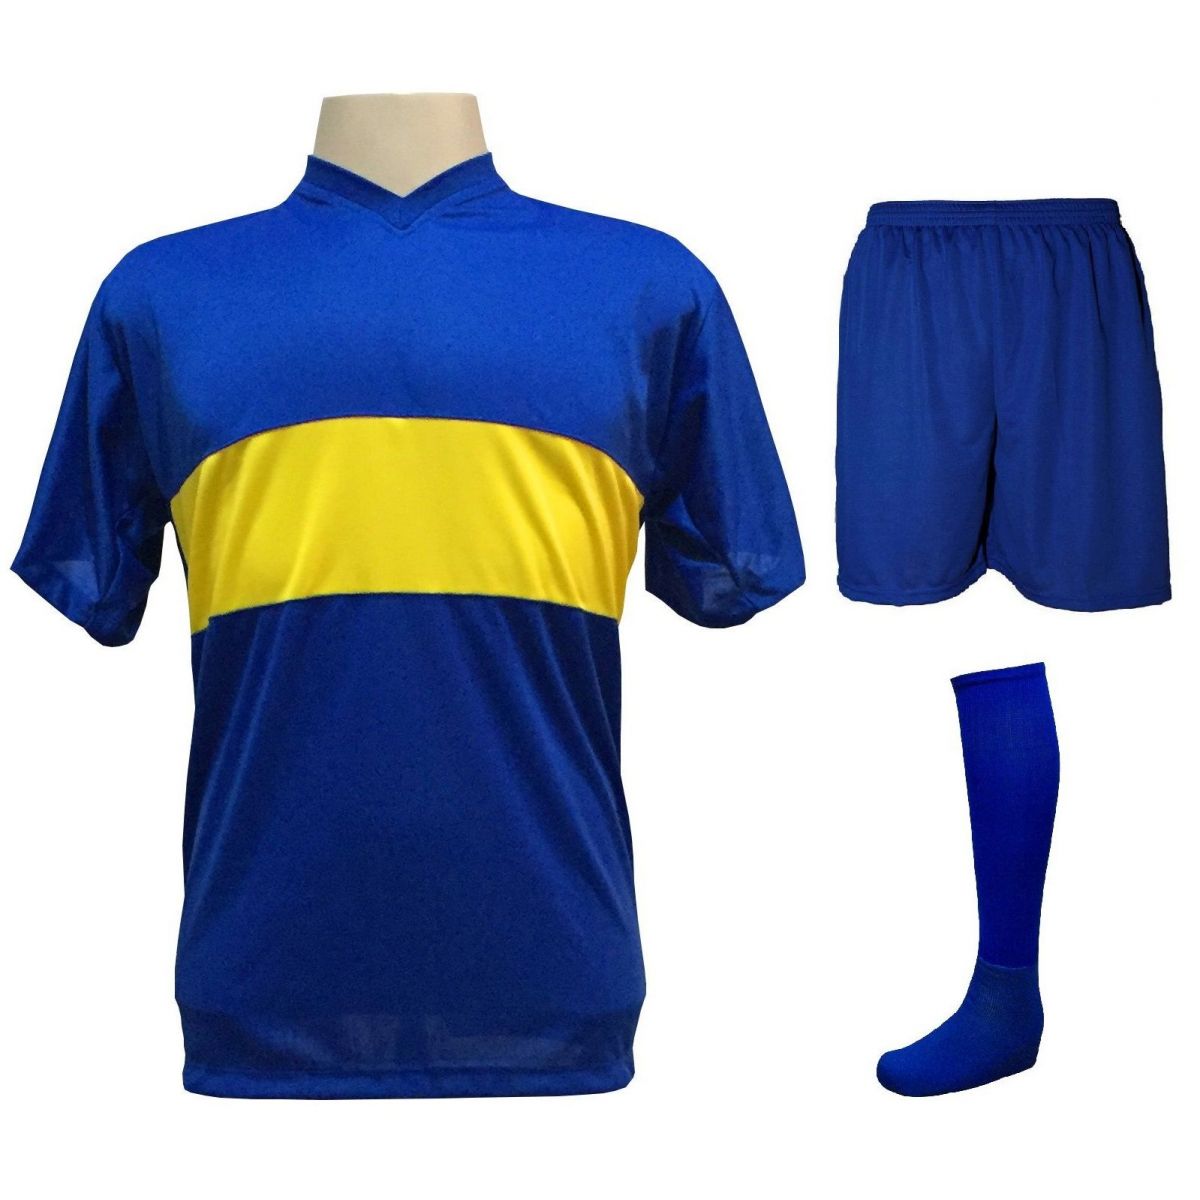 Uniforme Esportivo Completo modelo Boca Juniors 14+1 (14 camisas Royal/Amarelo + 14 calções Madrid Royal + 14 pares de meiões Royal + 1 conjunto de goleiro) + Brindes